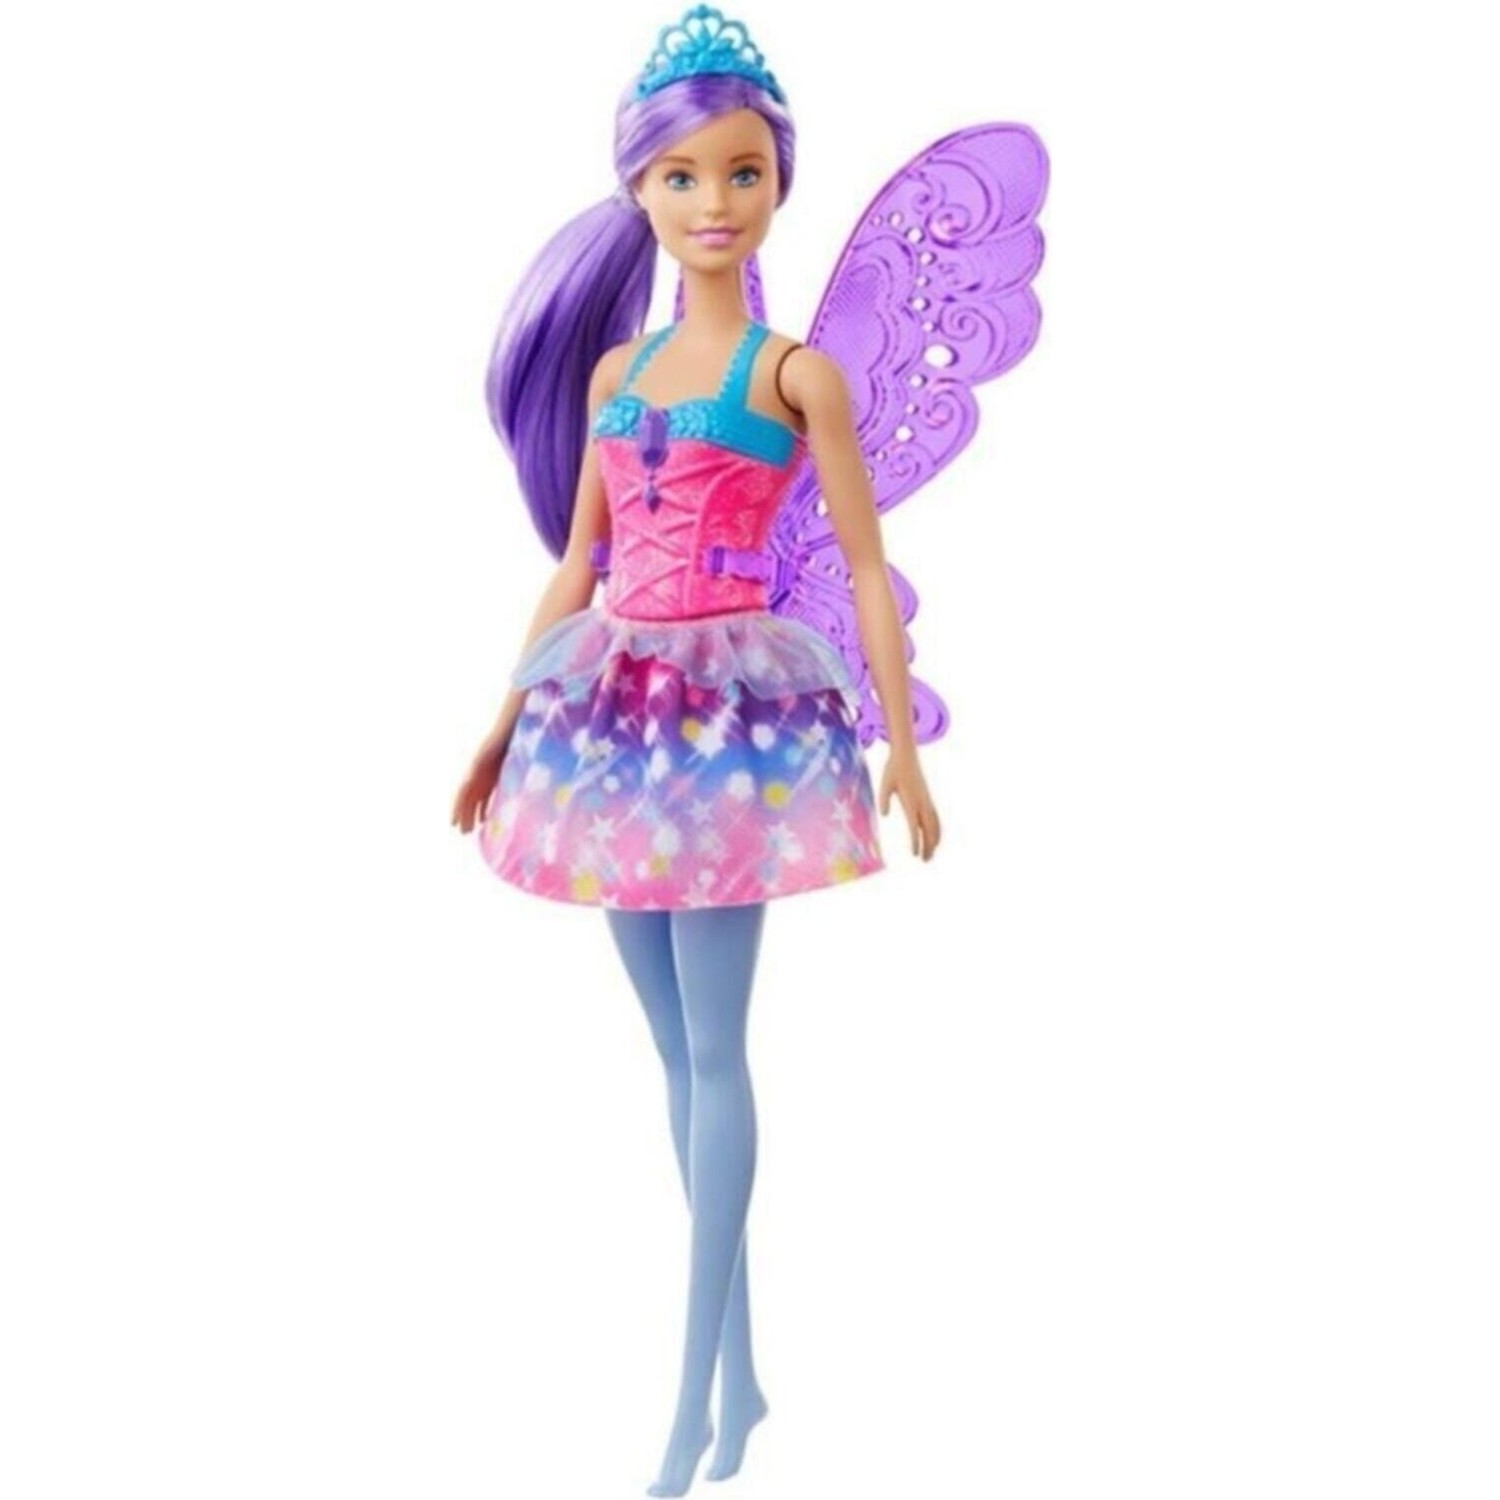 Куклы Barbie Dreamtopia Fairy Dolls красочное розовое платье, фиолетовые волосы GJK00 сказочные мини куклы barbie фея